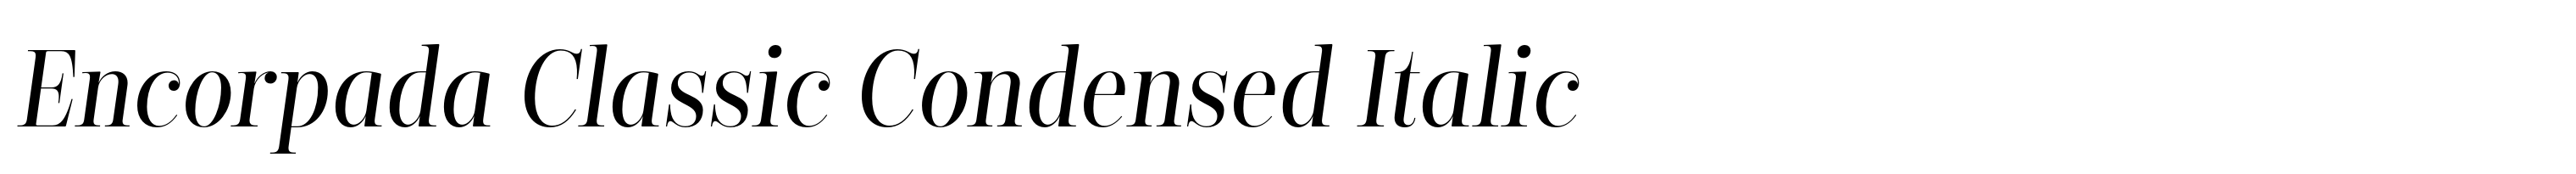 Encorpada Classic Condensed Italic